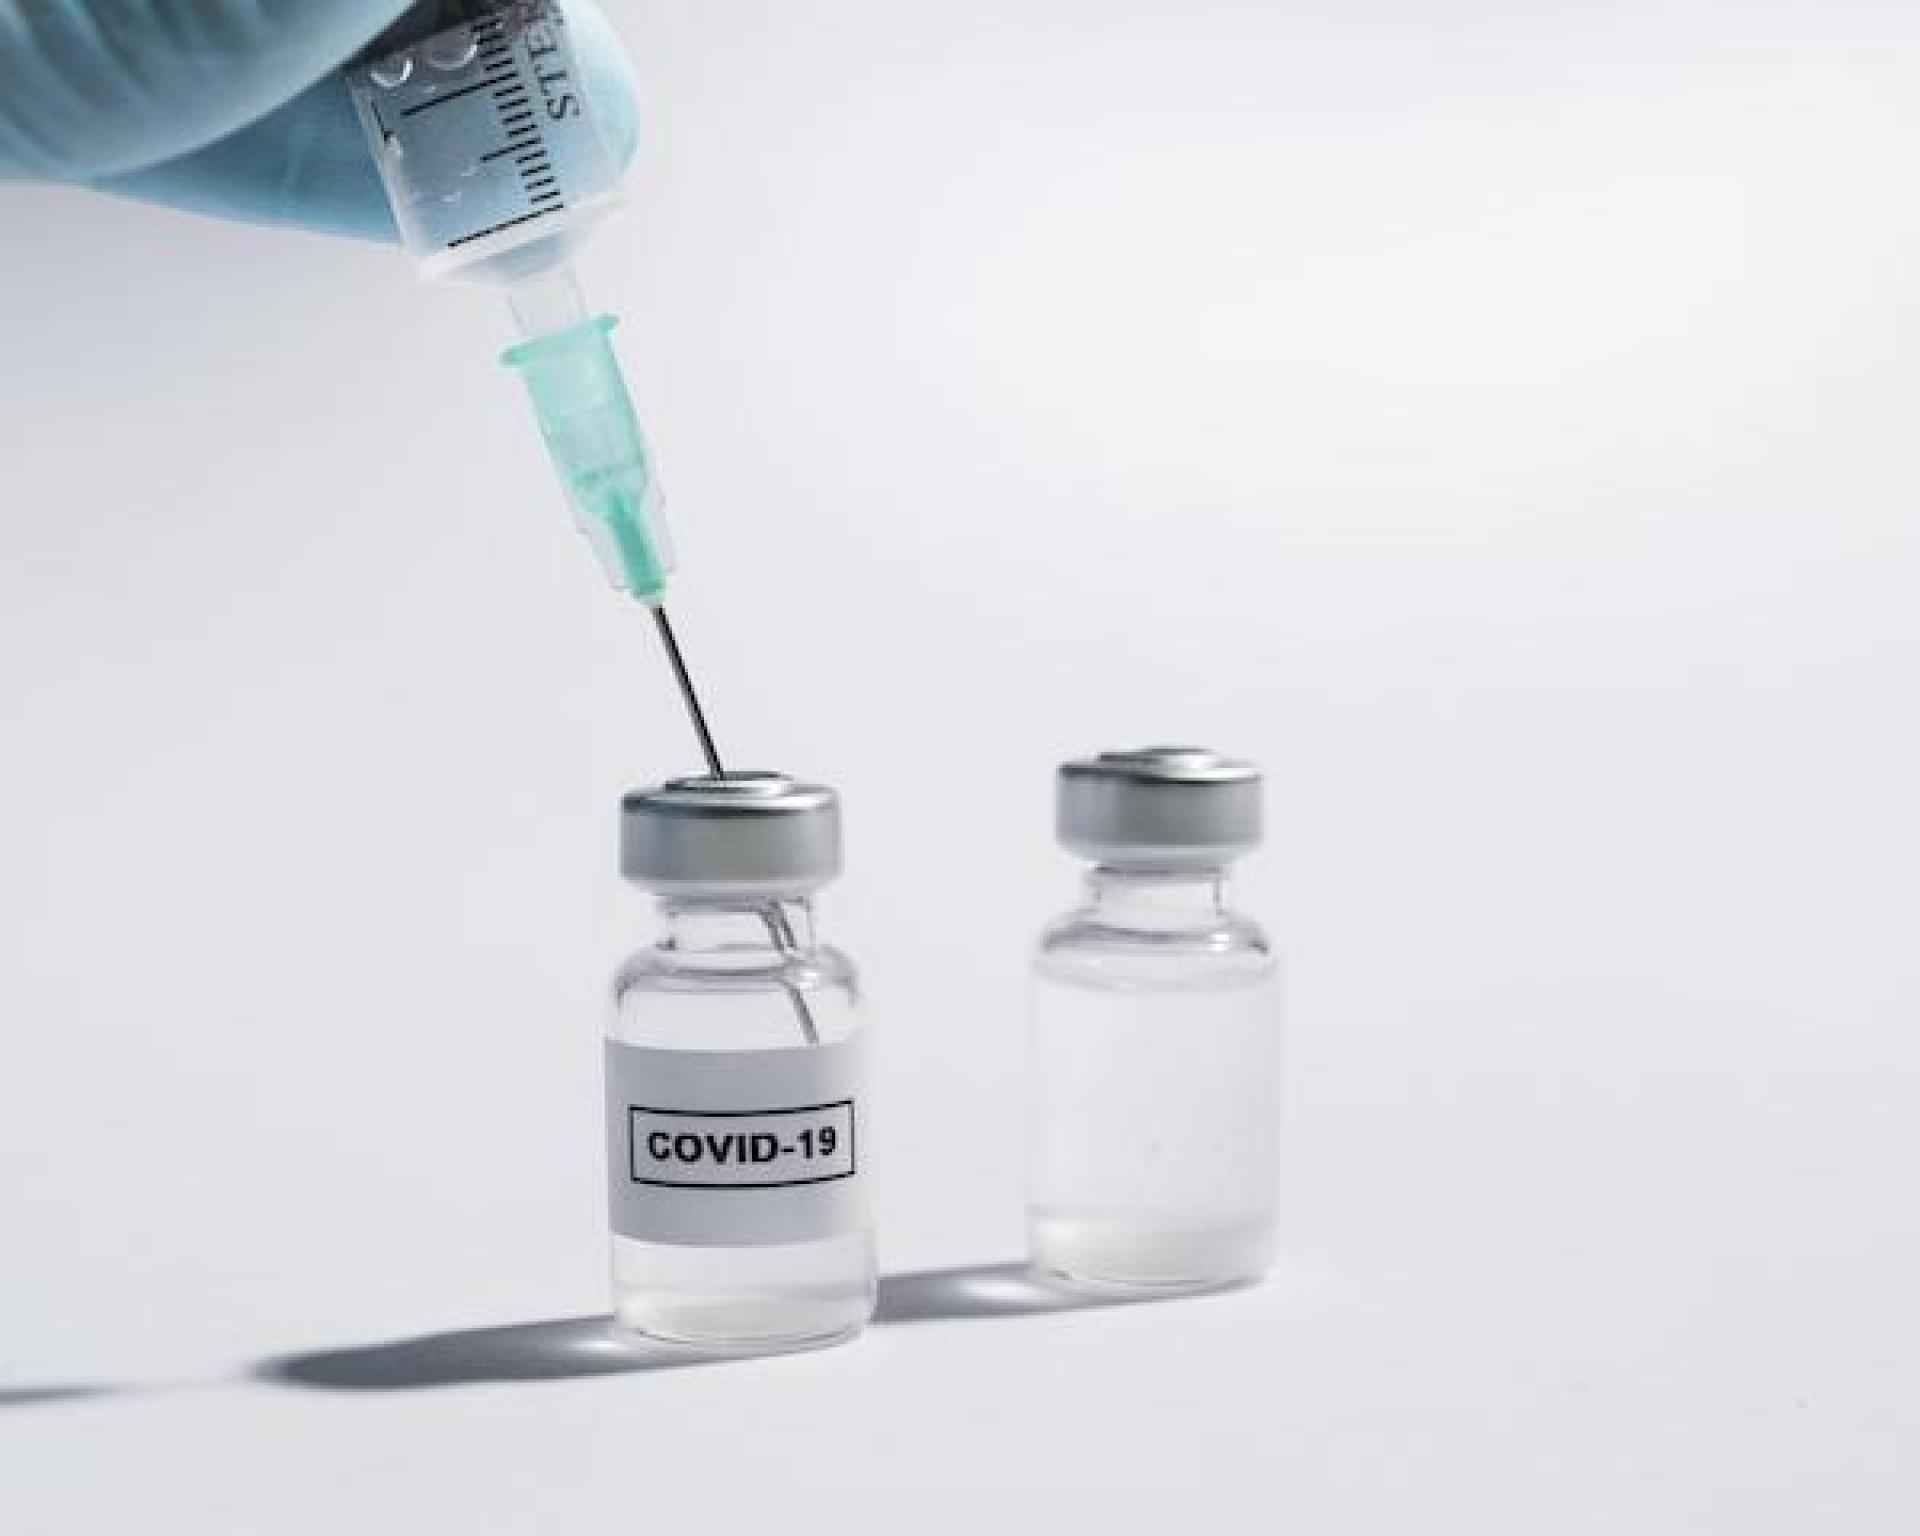 EUA discutem exclusão de PVHA de ensaios com vacinas da Covid-19